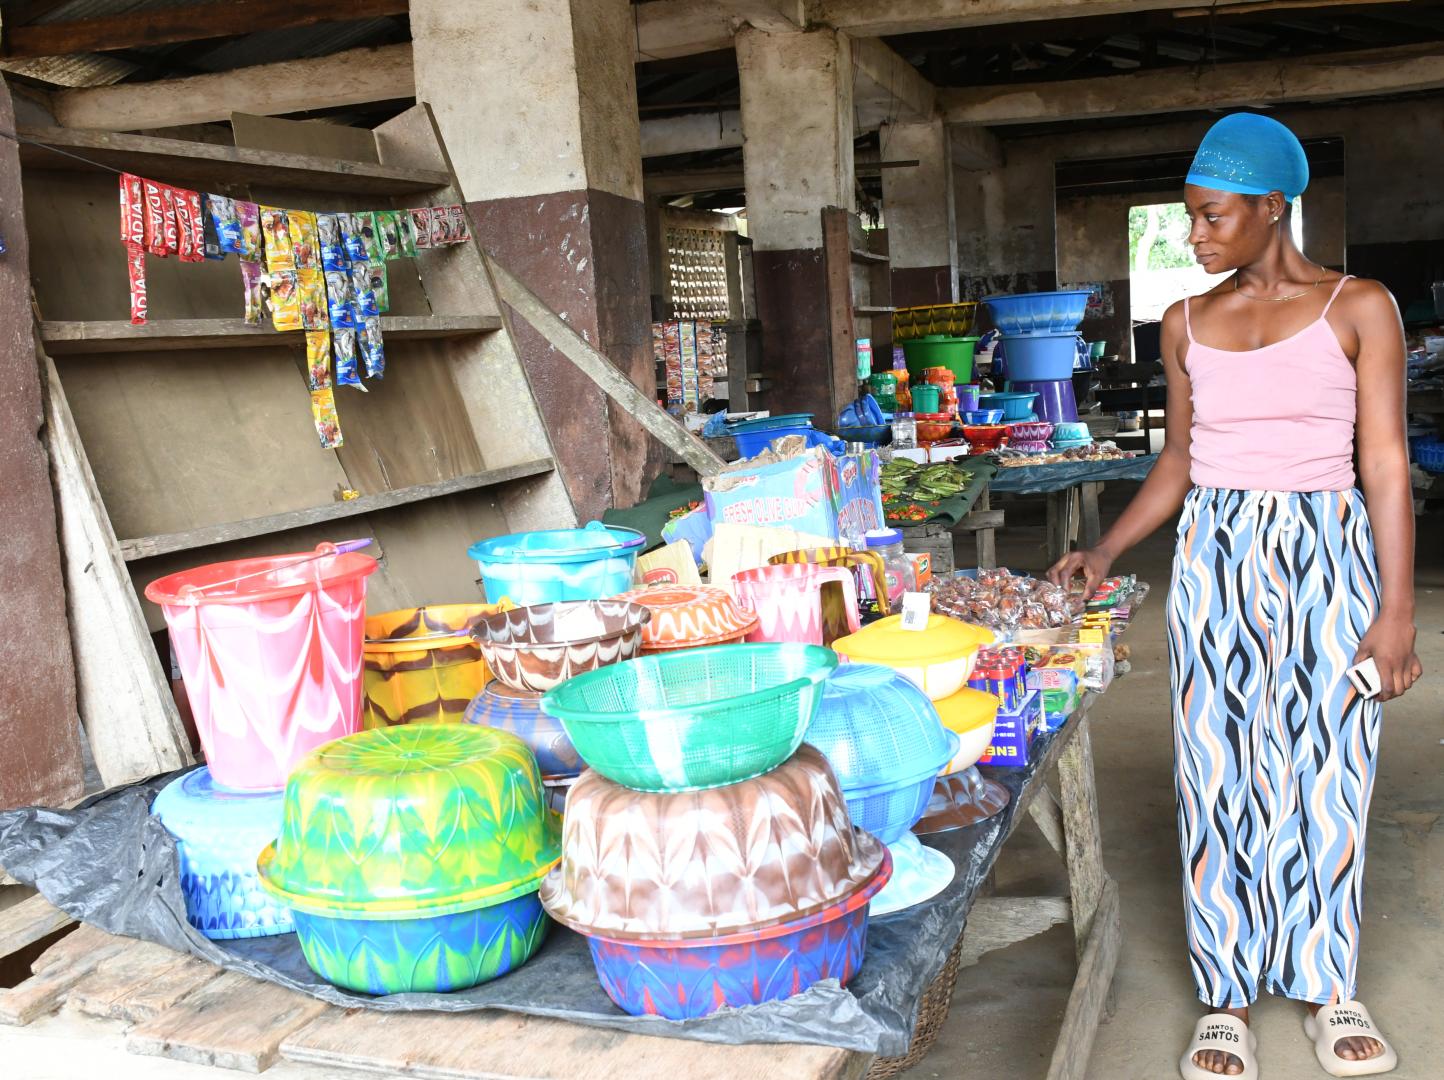 Woman in Market standing alongside her goods